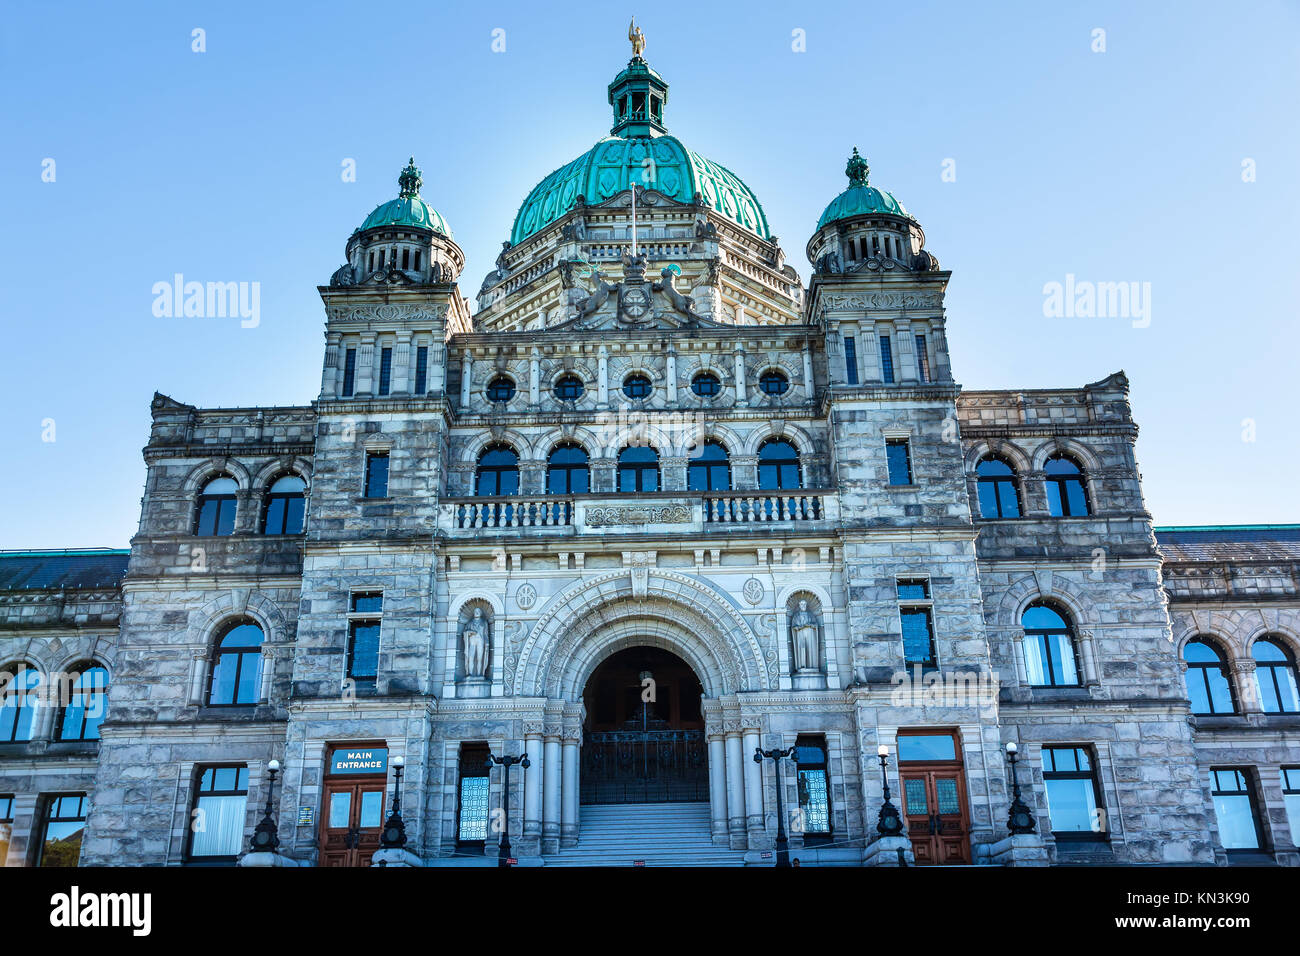 Capital provincial Parlamento legislativo Buildiing Victoria British Columbia, Canadá. Estatua de oro de la parte superior del domo es de George Vancouver. Foto de stock